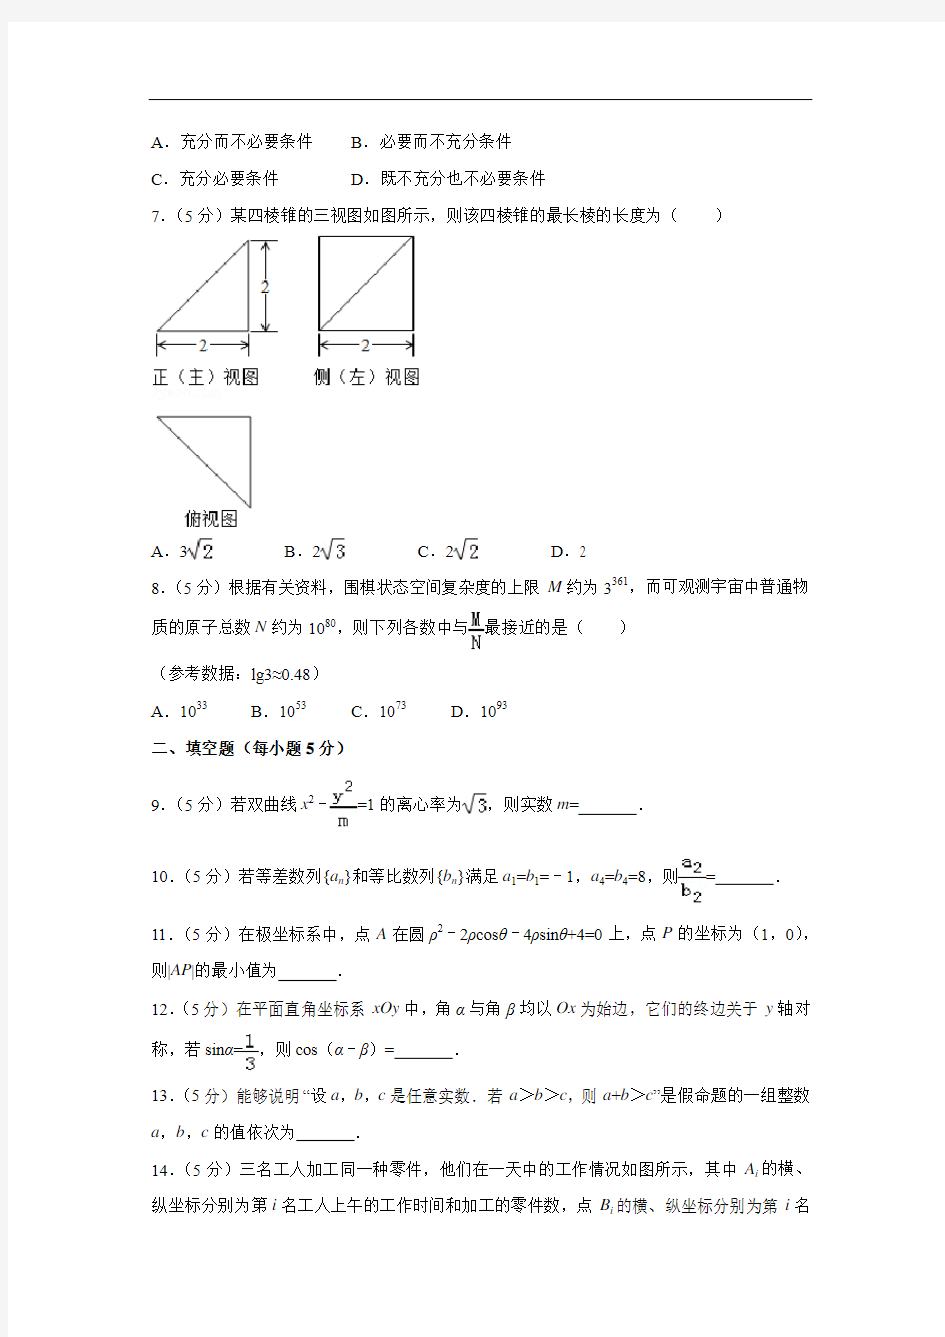 【数学】2017年高考真题——北京卷(理)(解析版)